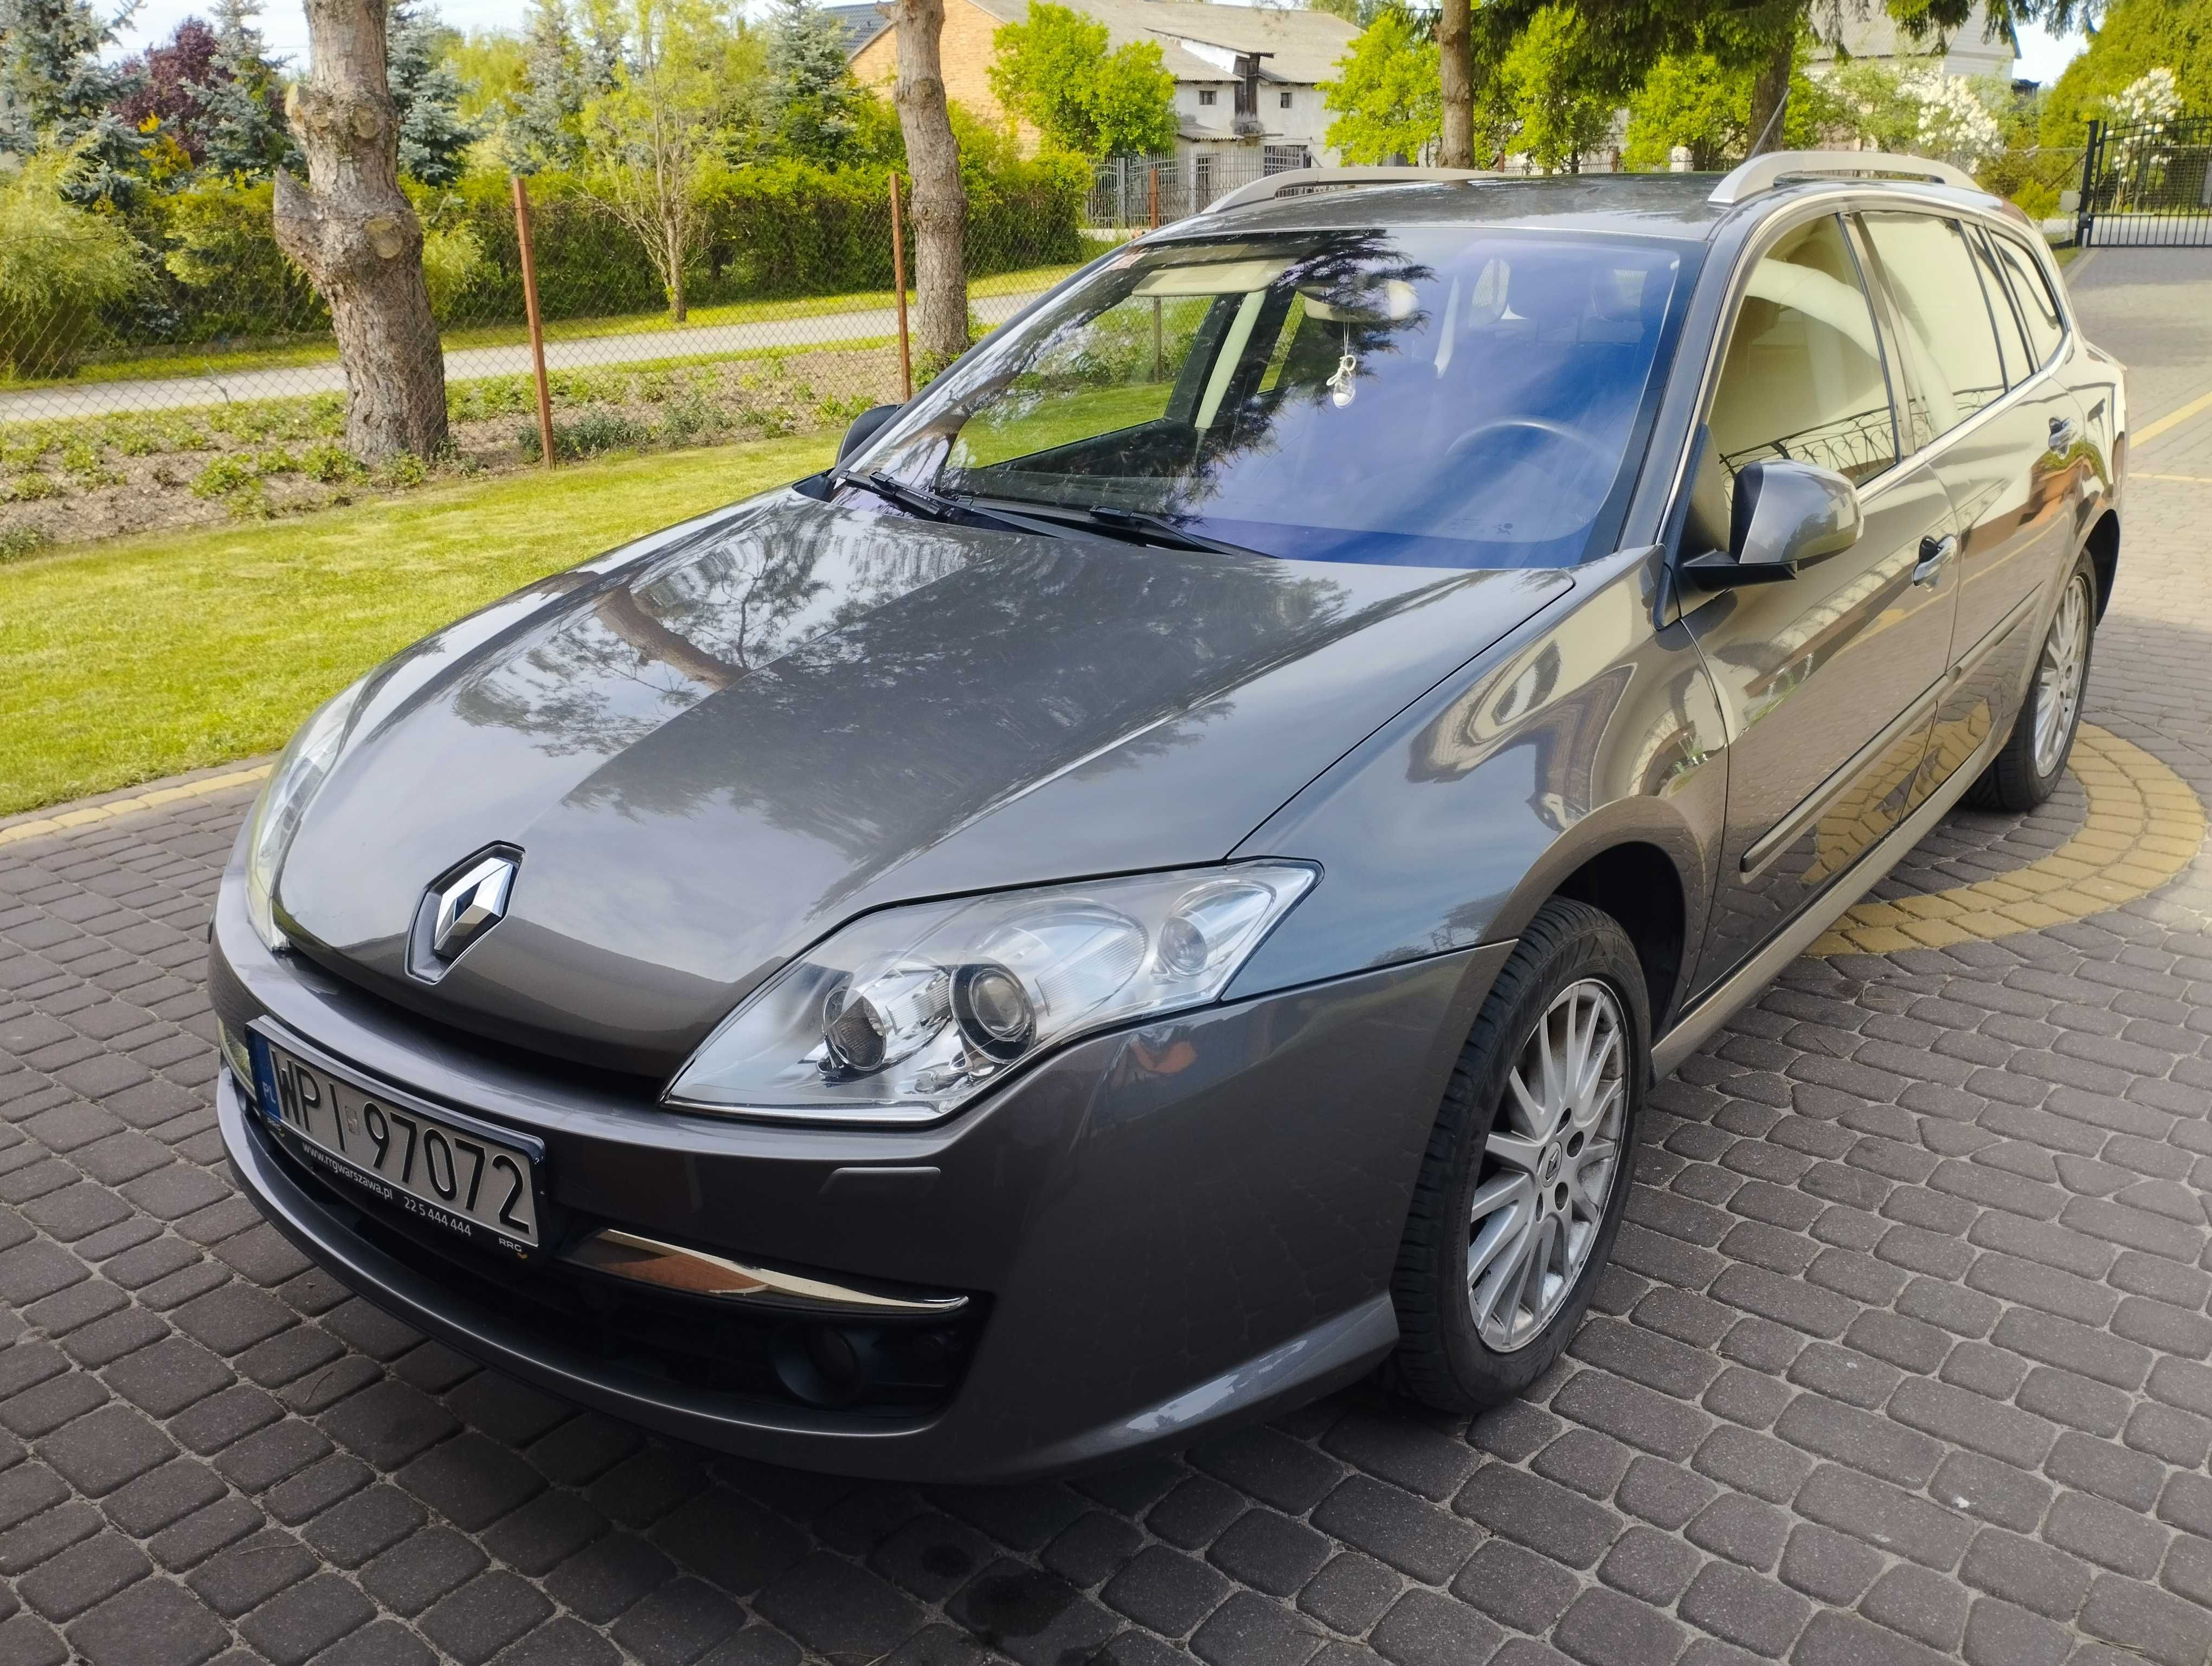 Renault Laguna III